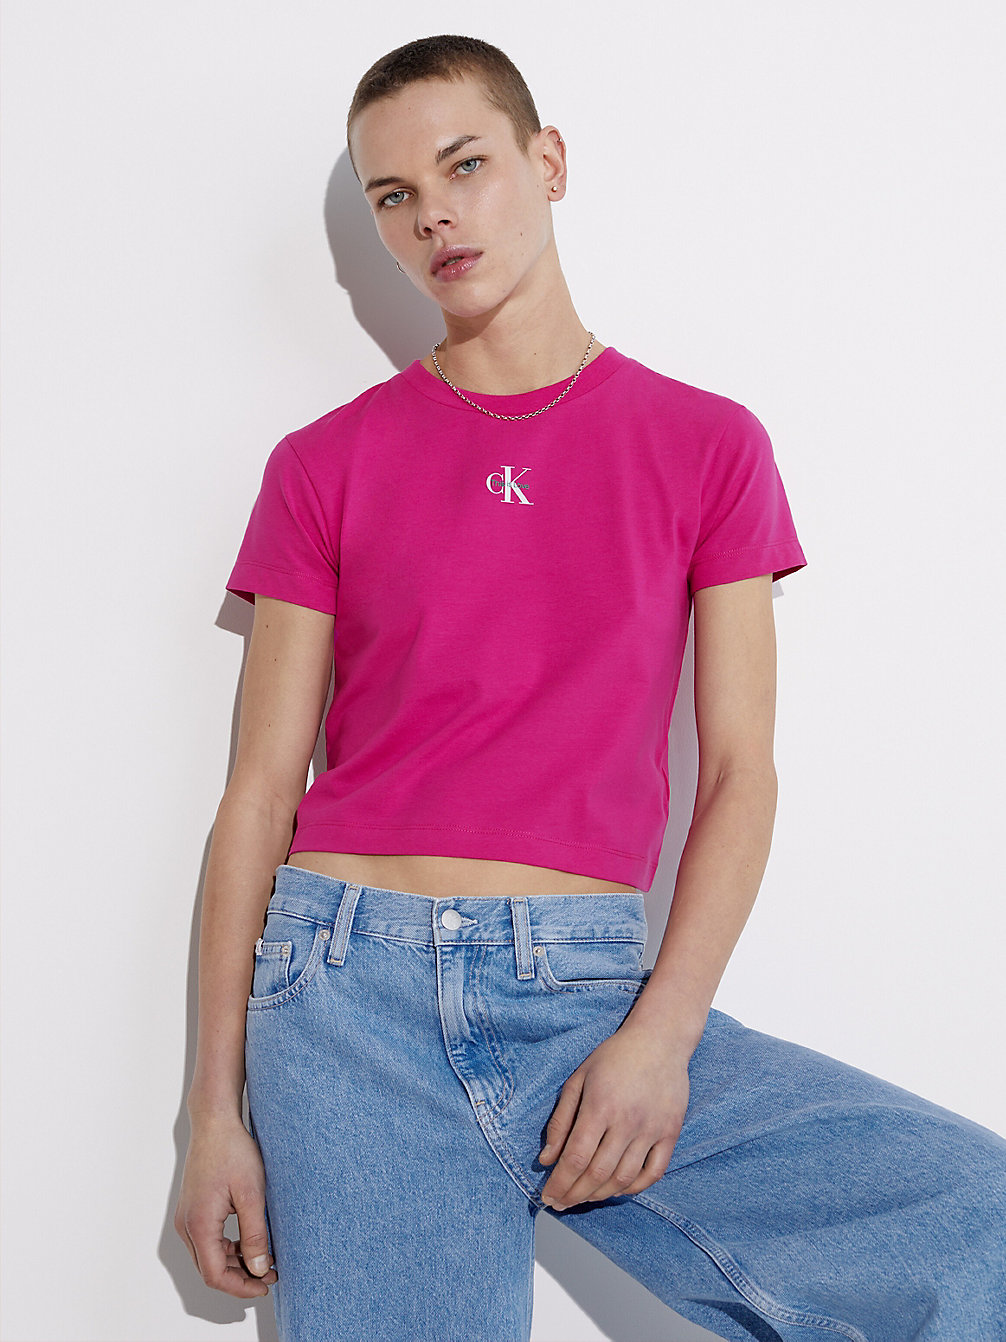 FUCHSIA RED Schmales Monogramm-T-Shirt - Pride undefined Damen Calvin Klein